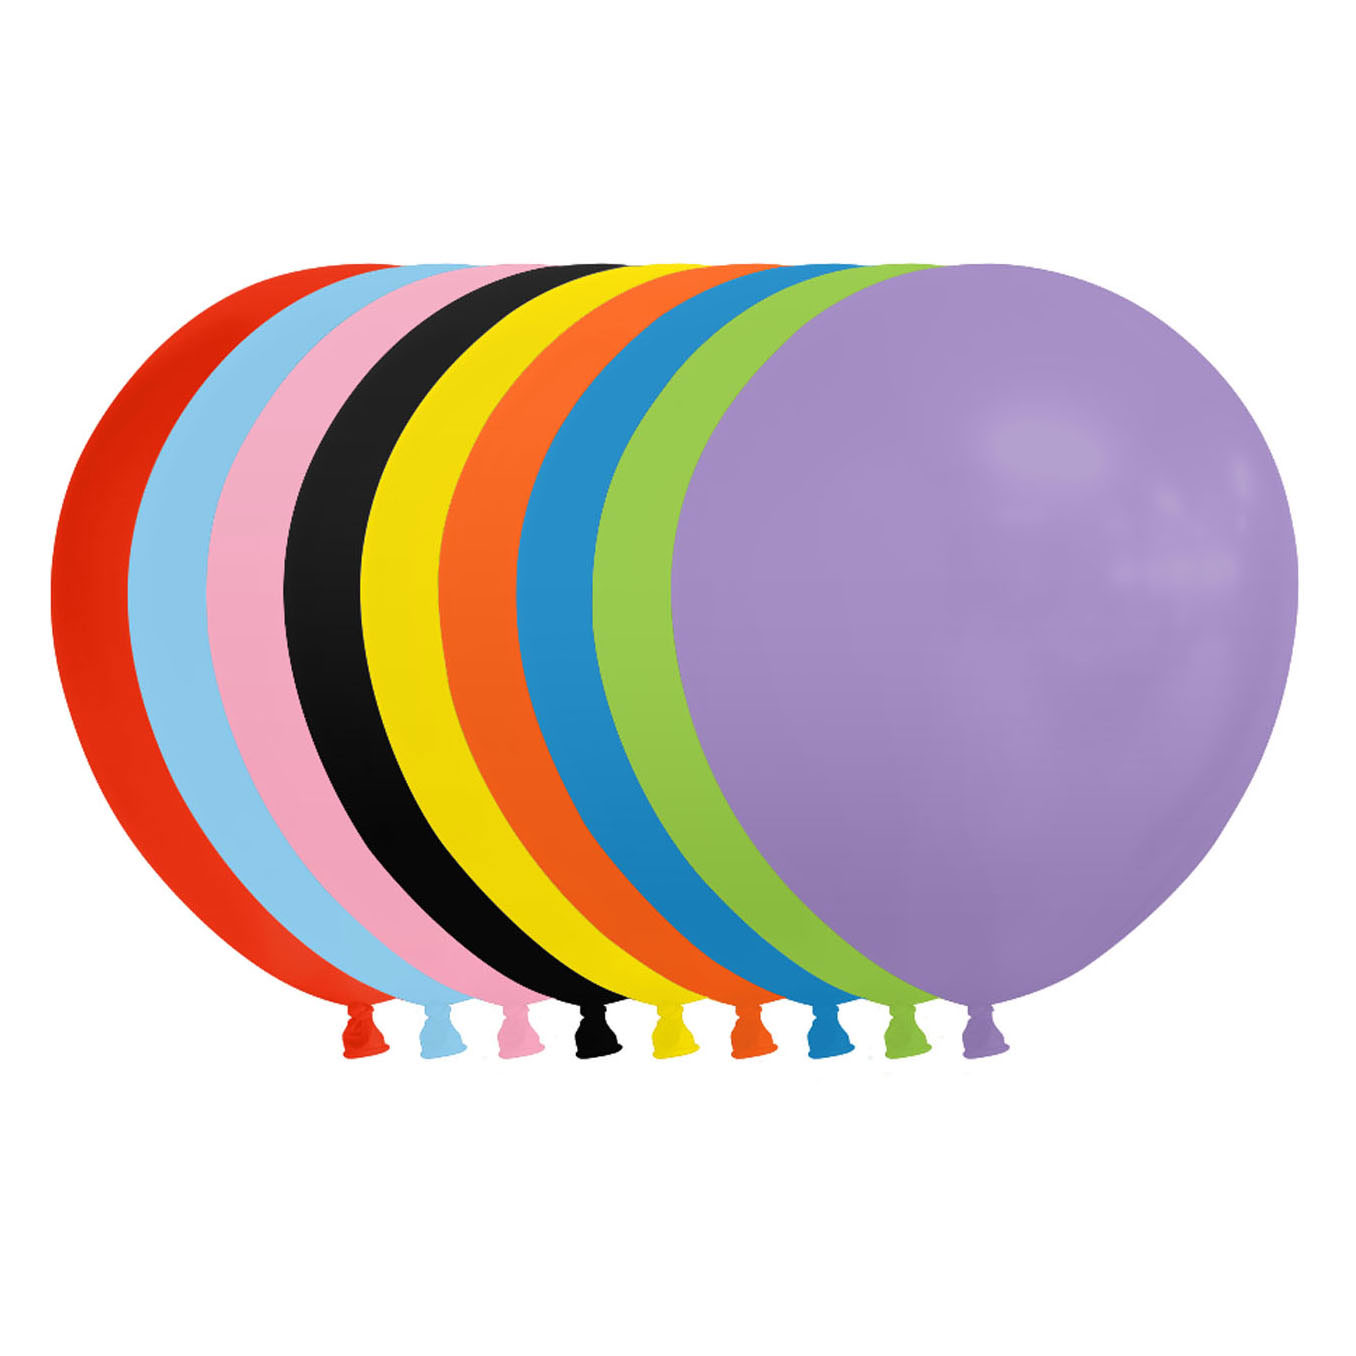 Acheter Ballons Couleurs Mélangées 30cm, 100pcs. en ligne?